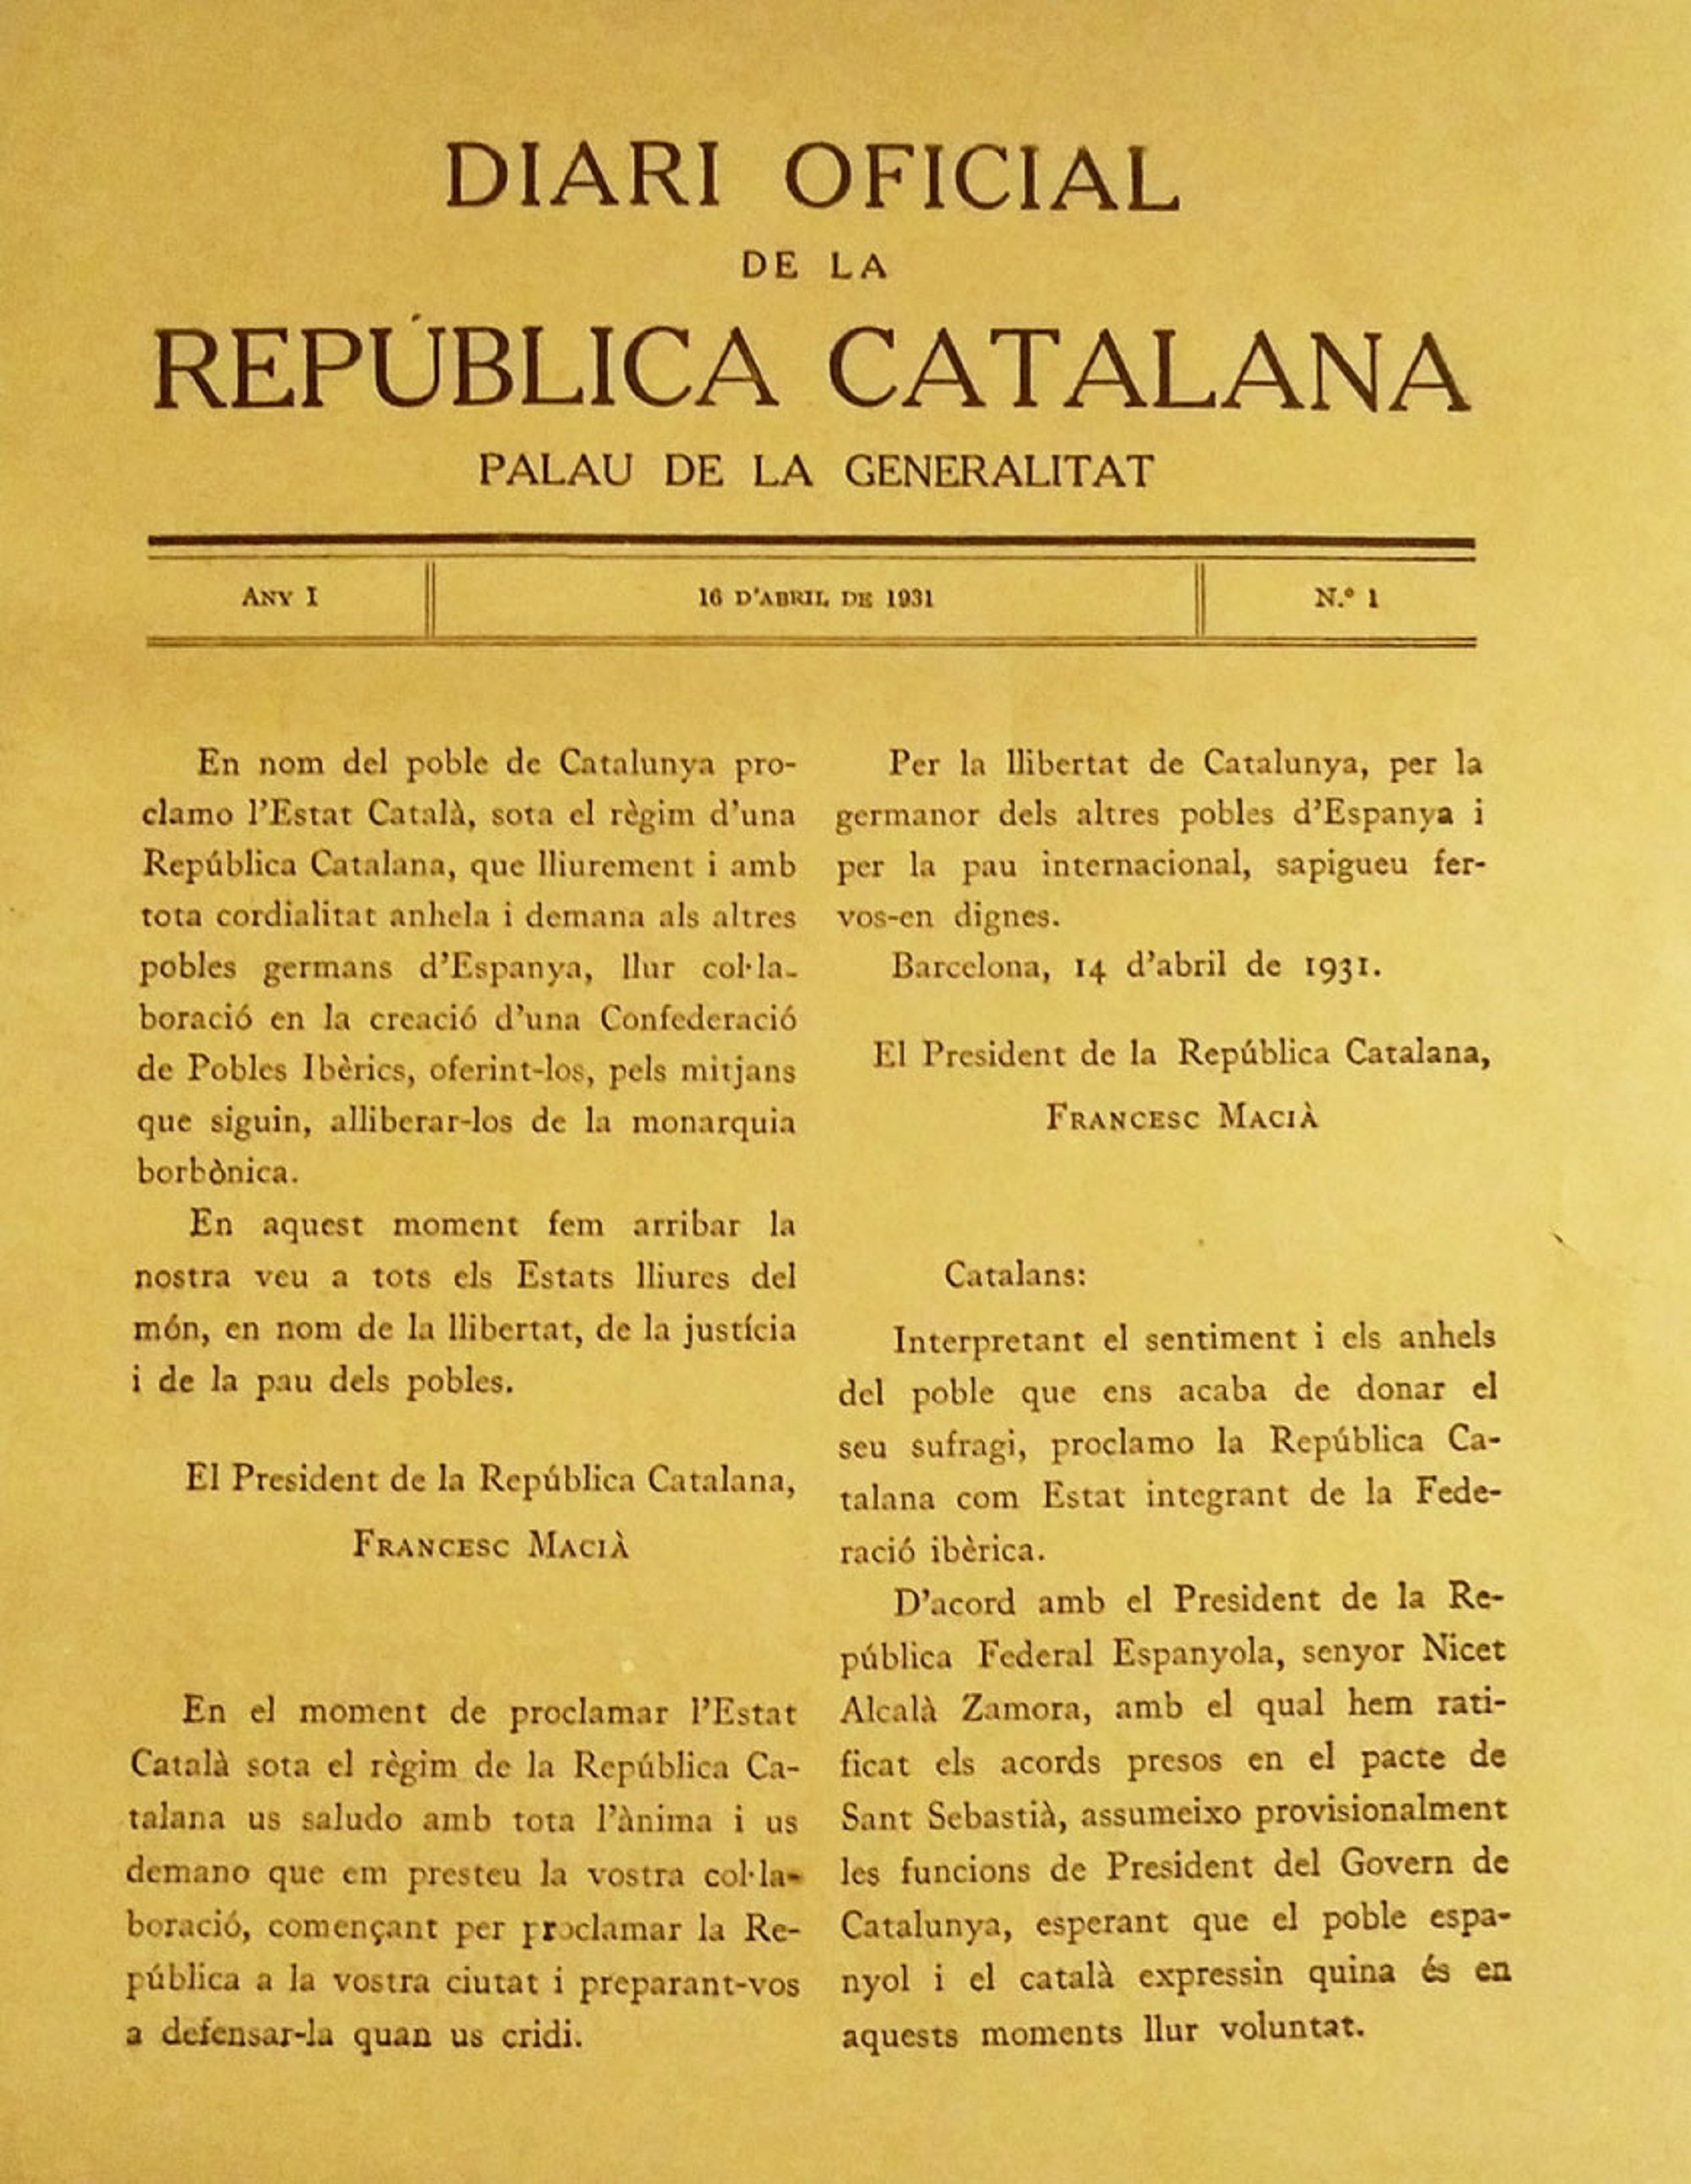 Este es el único periódico oficial existente de la República Catalana